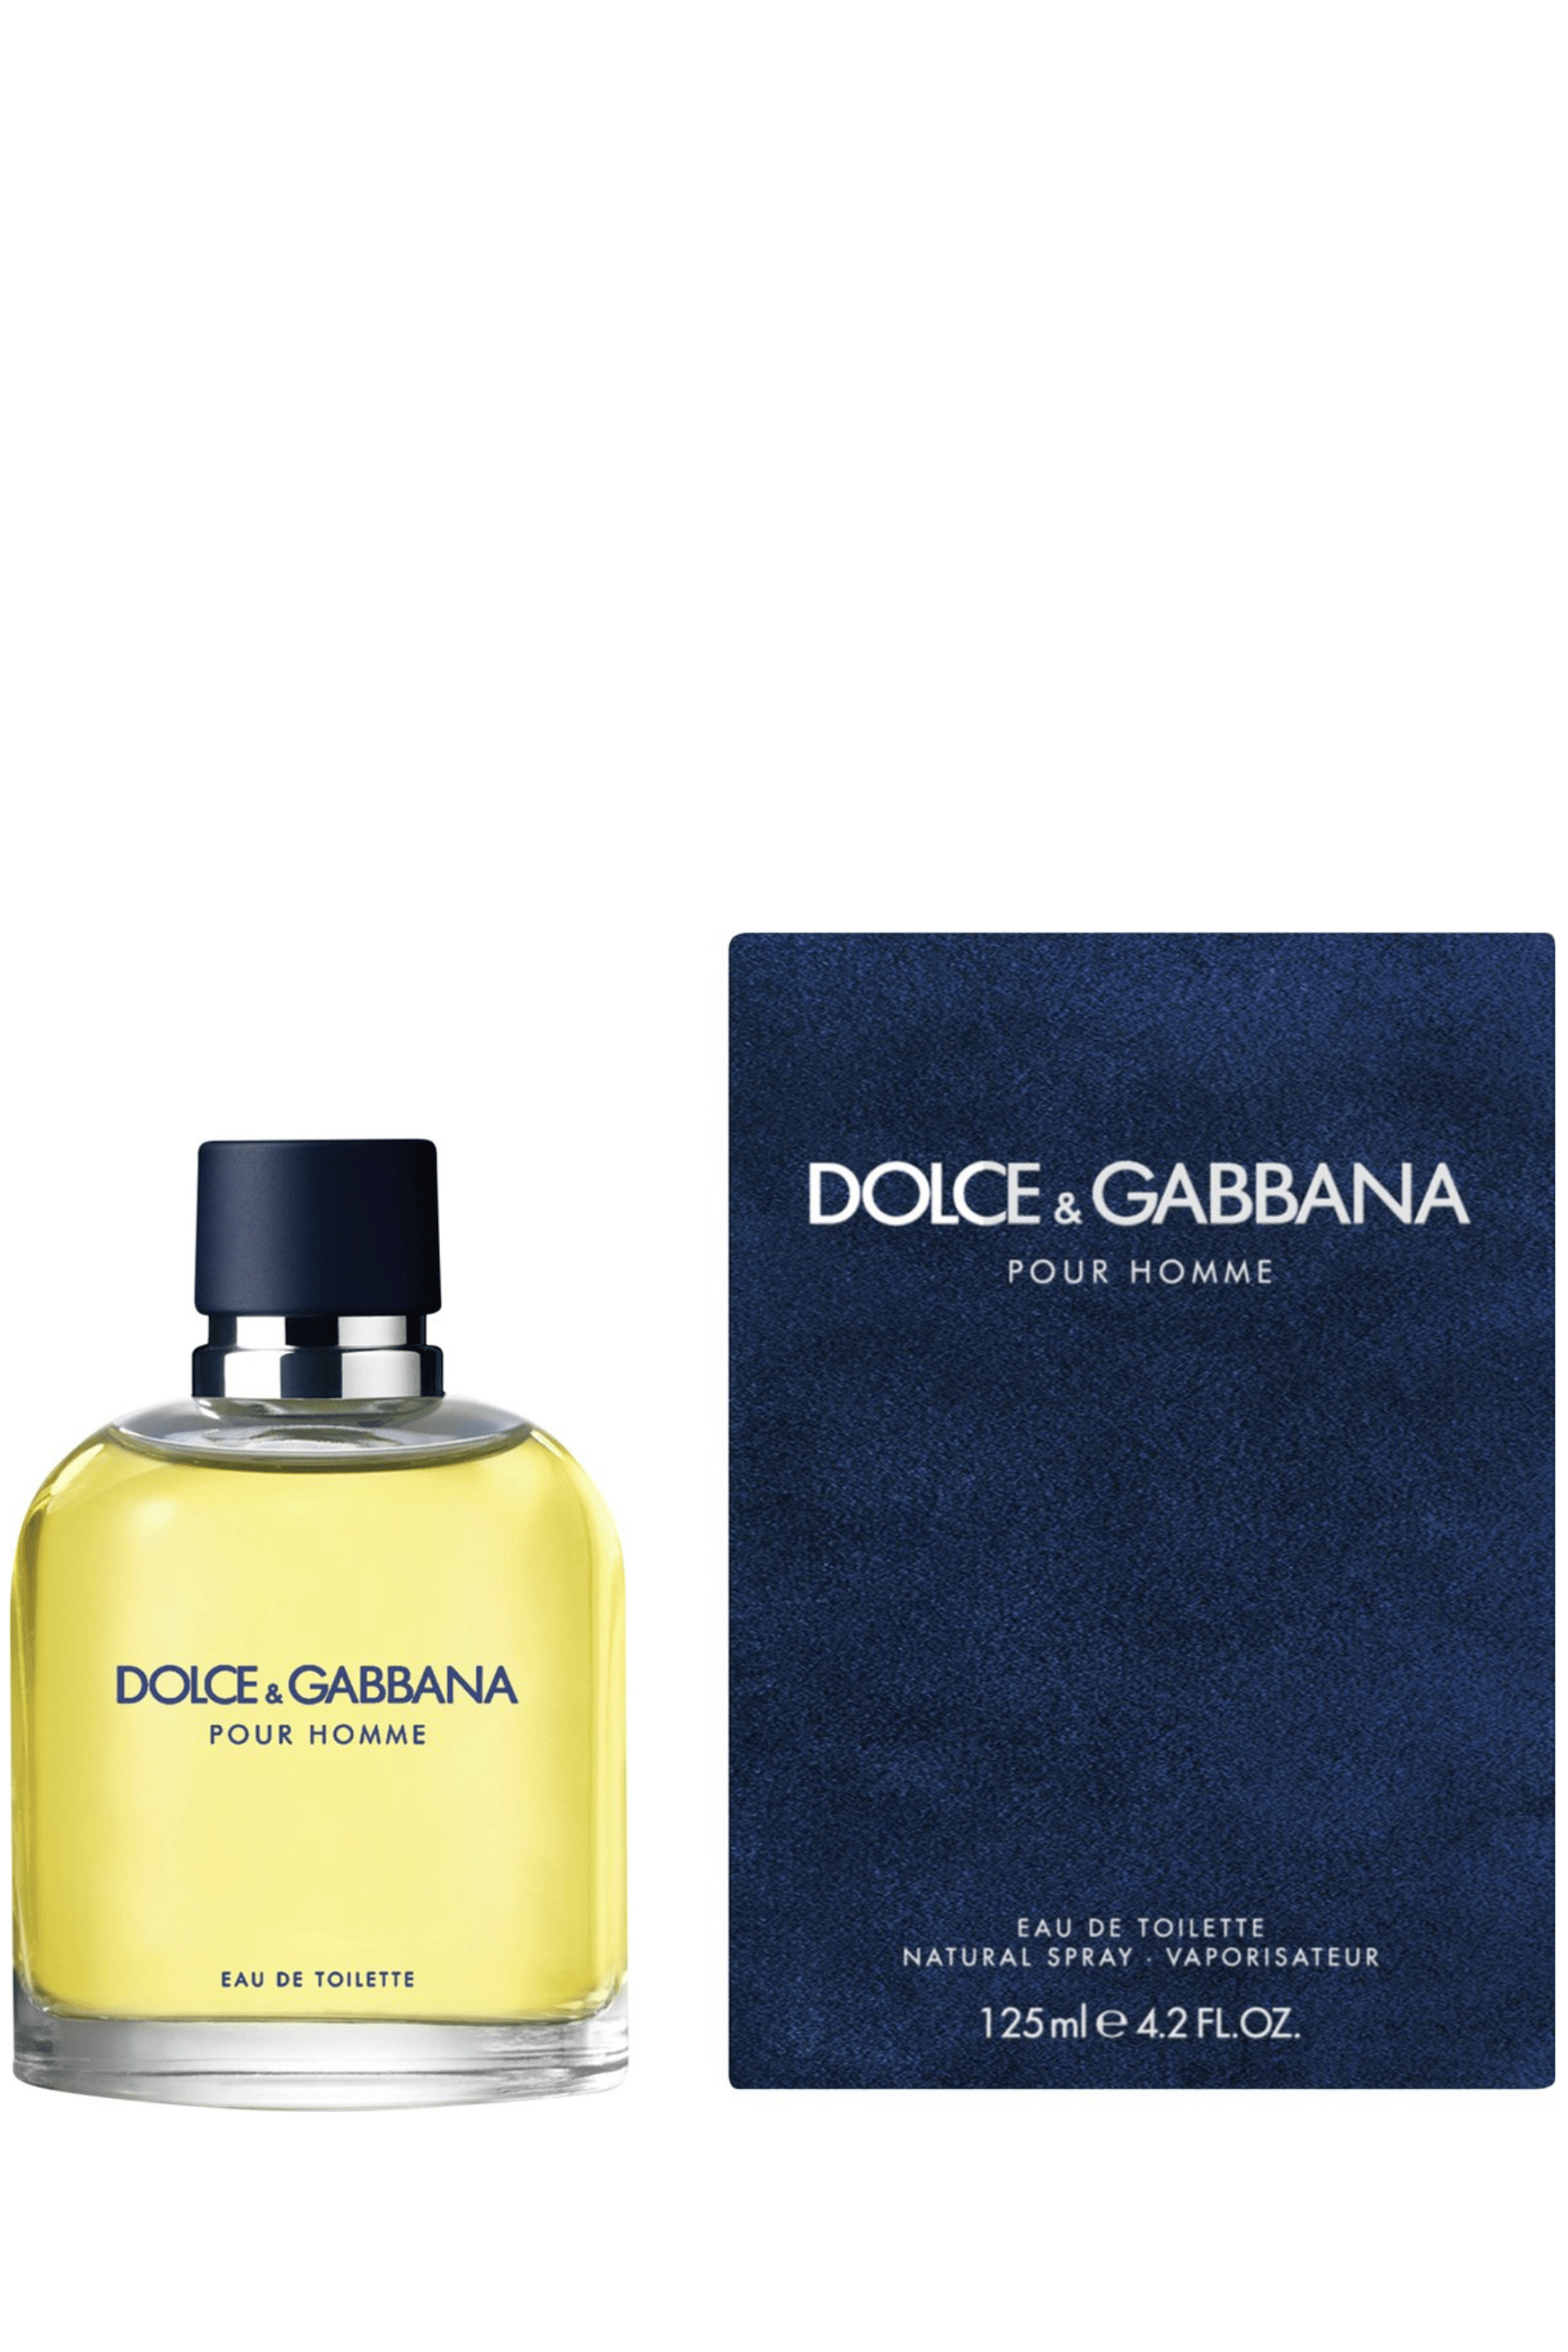 Jaarlijks vasthouden verdediging Dolce & Gabbana | Pour Homme Eau de Toilette - REBL